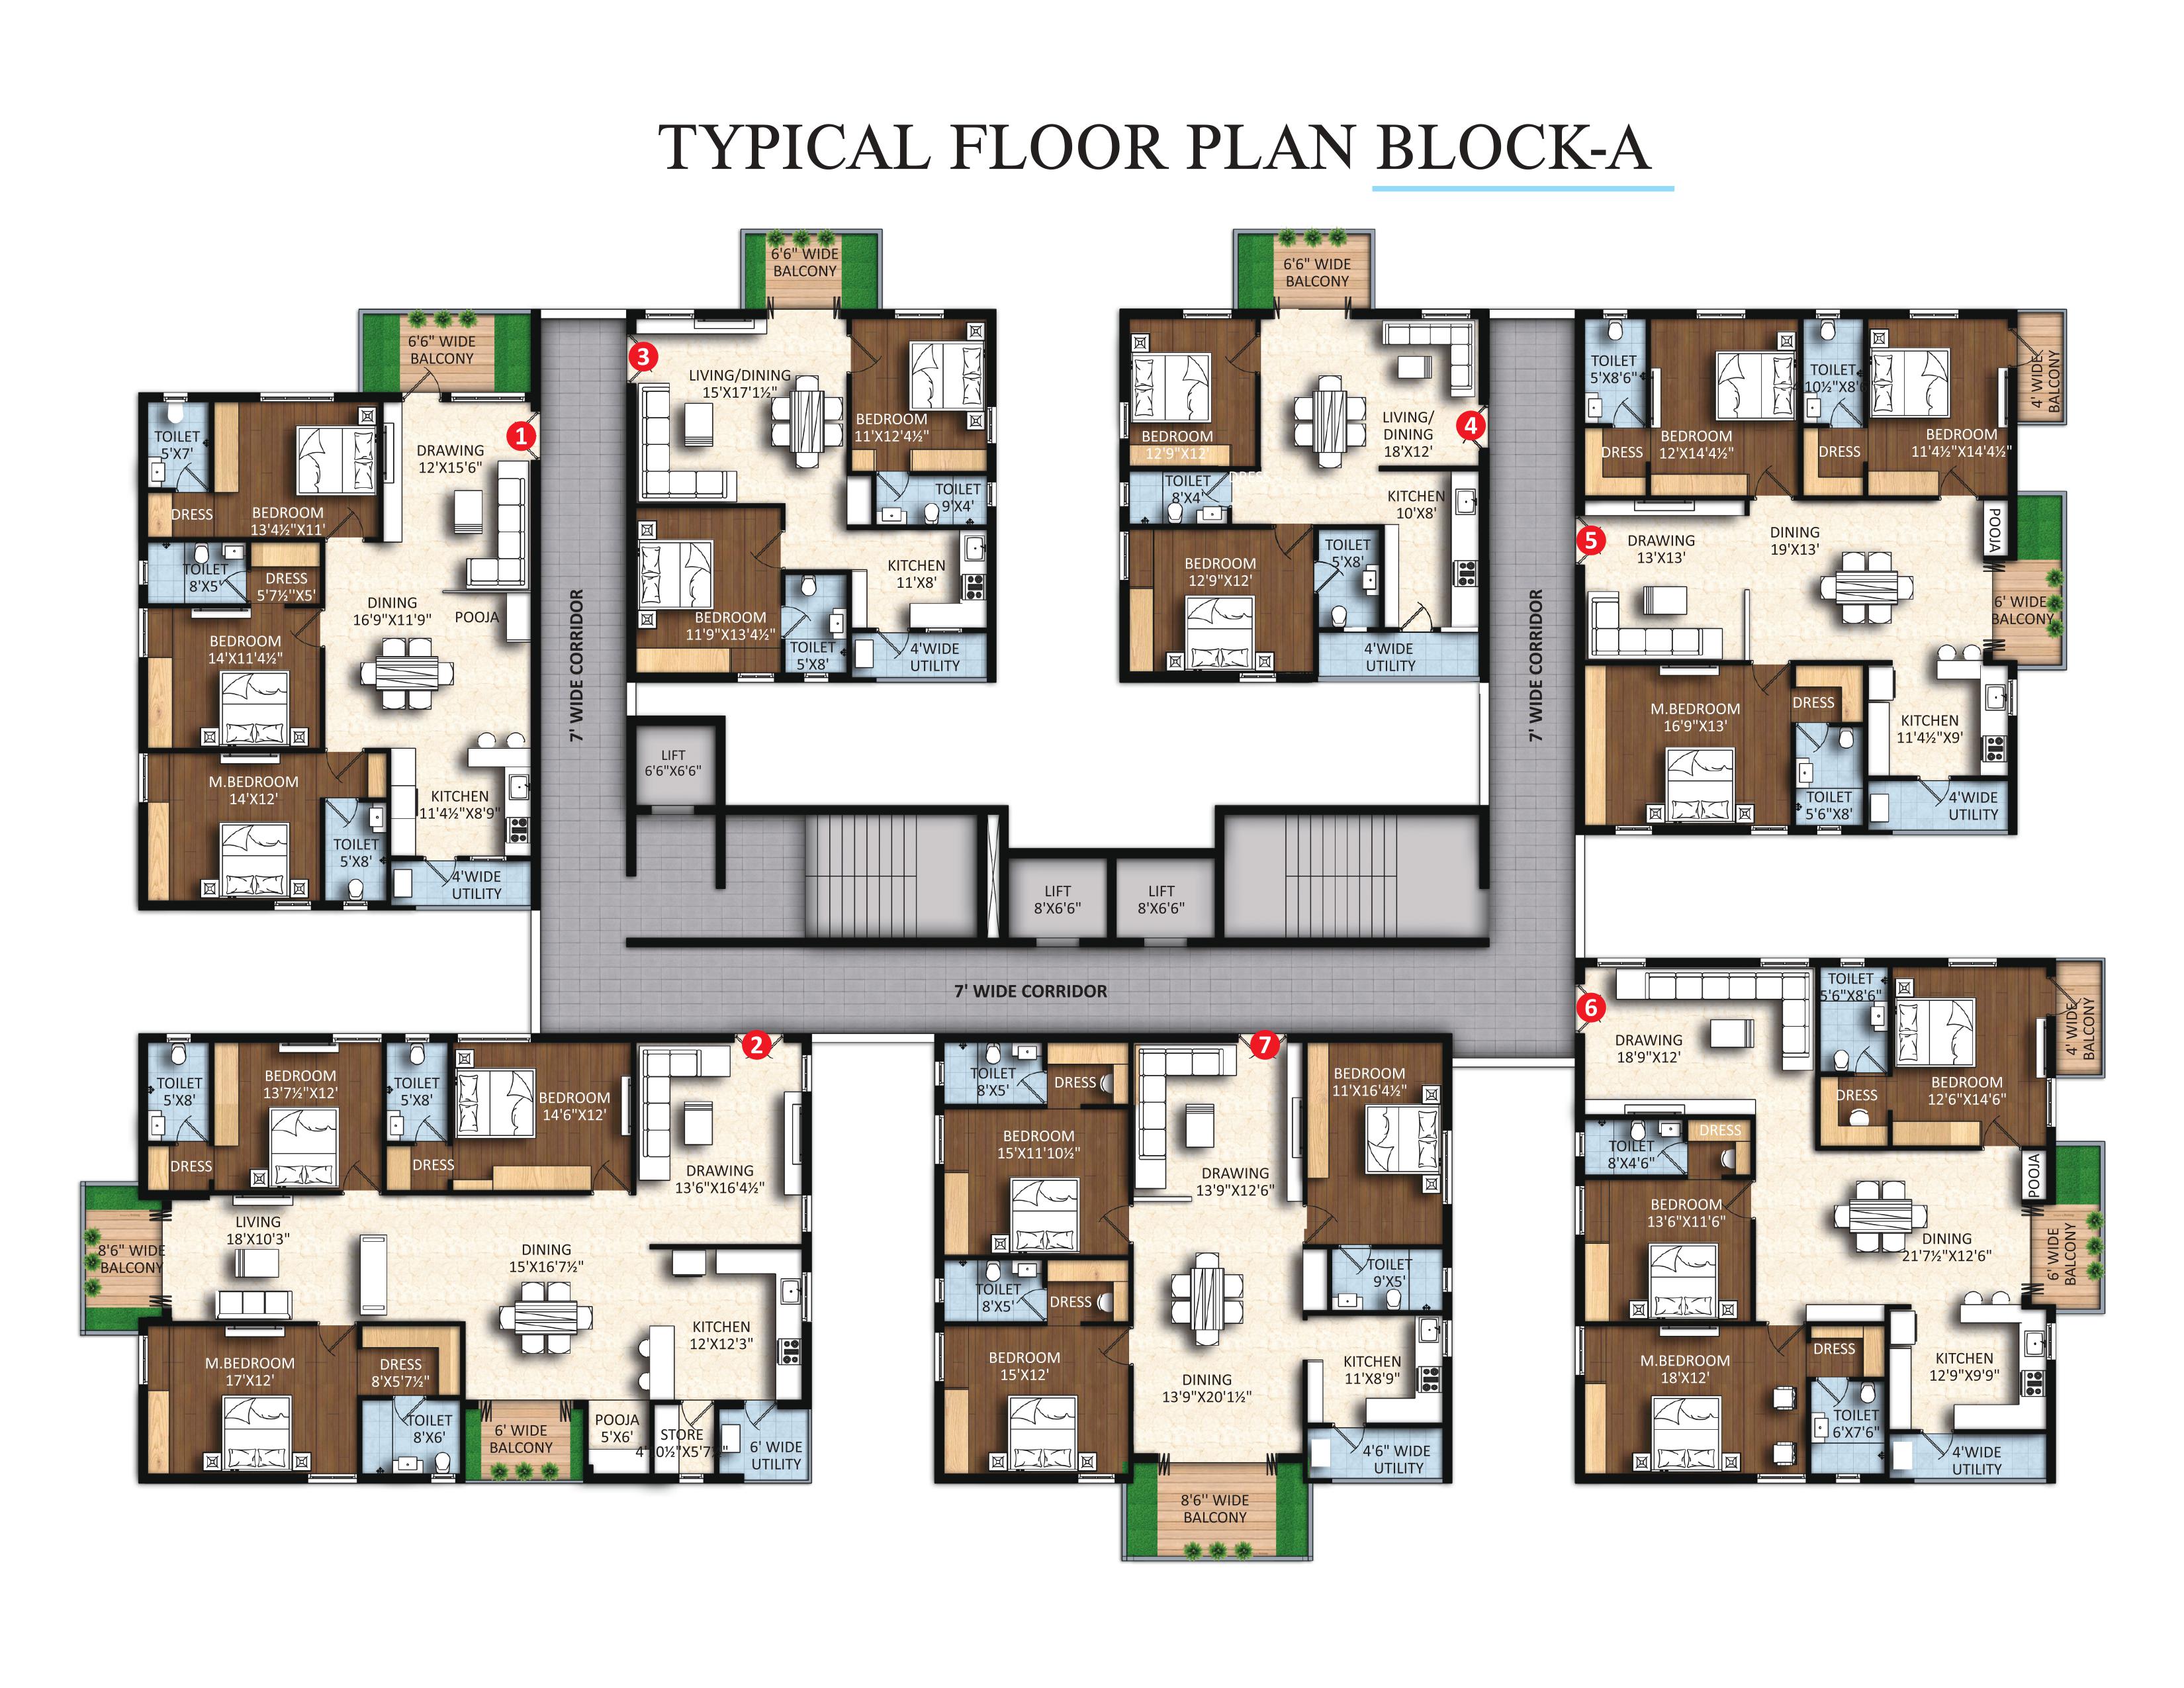 riddhi's floor plan